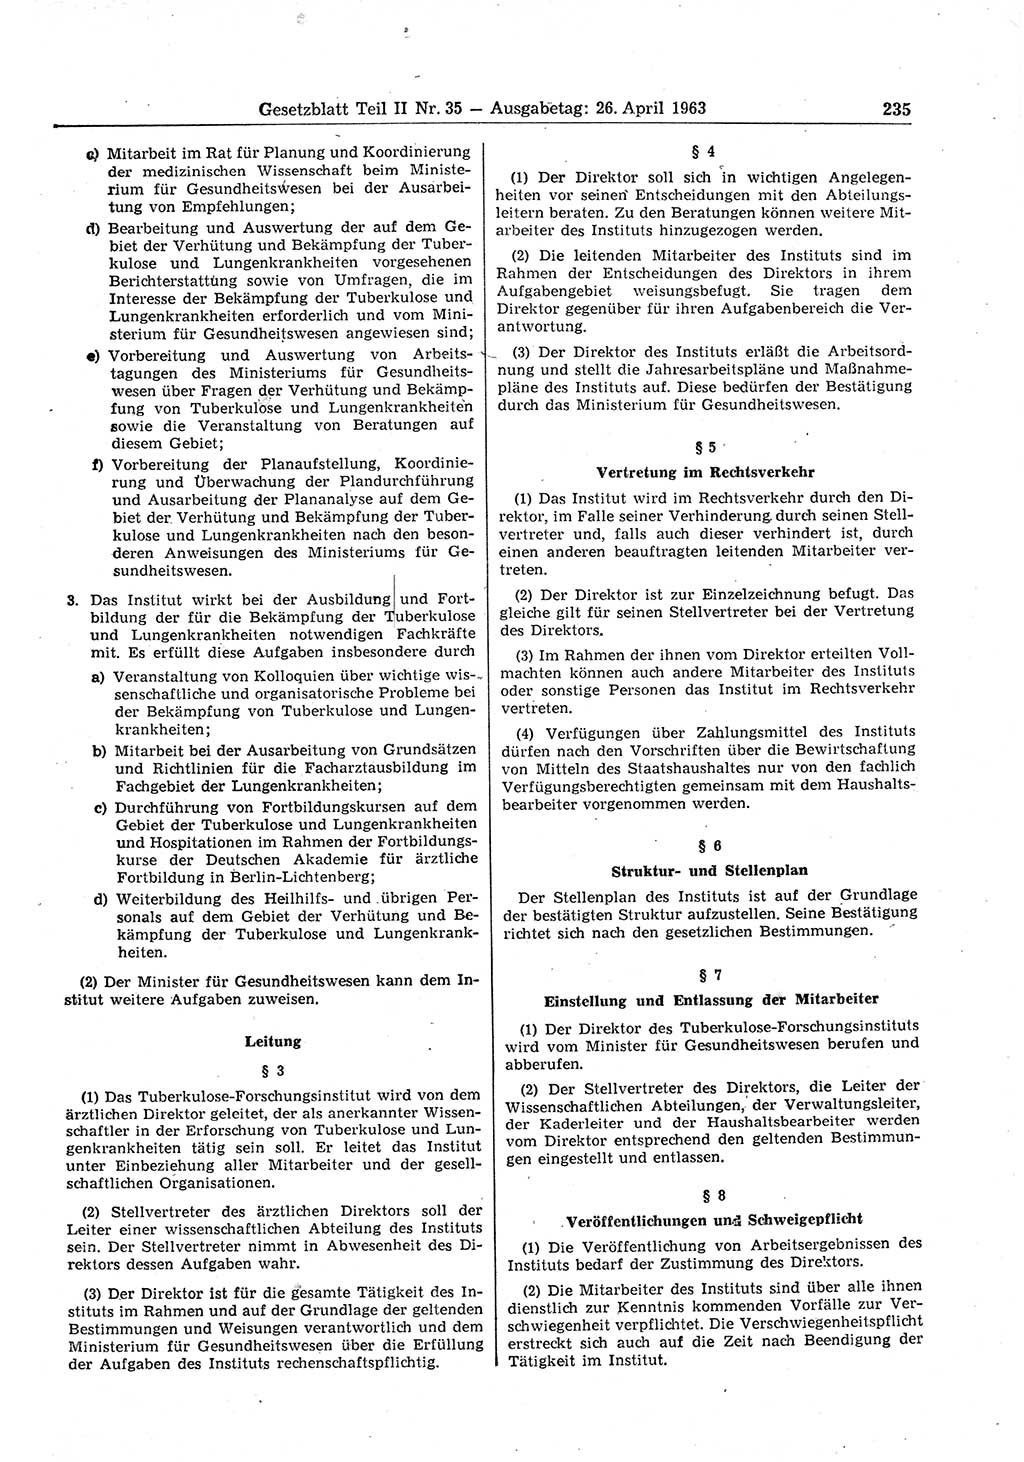 Gesetzblatt (GBl.) der Deutschen Demokratischen Republik (DDR) Teil ⅠⅠ 1963, Seite 235 (GBl. DDR ⅠⅠ 1963, S. 235)